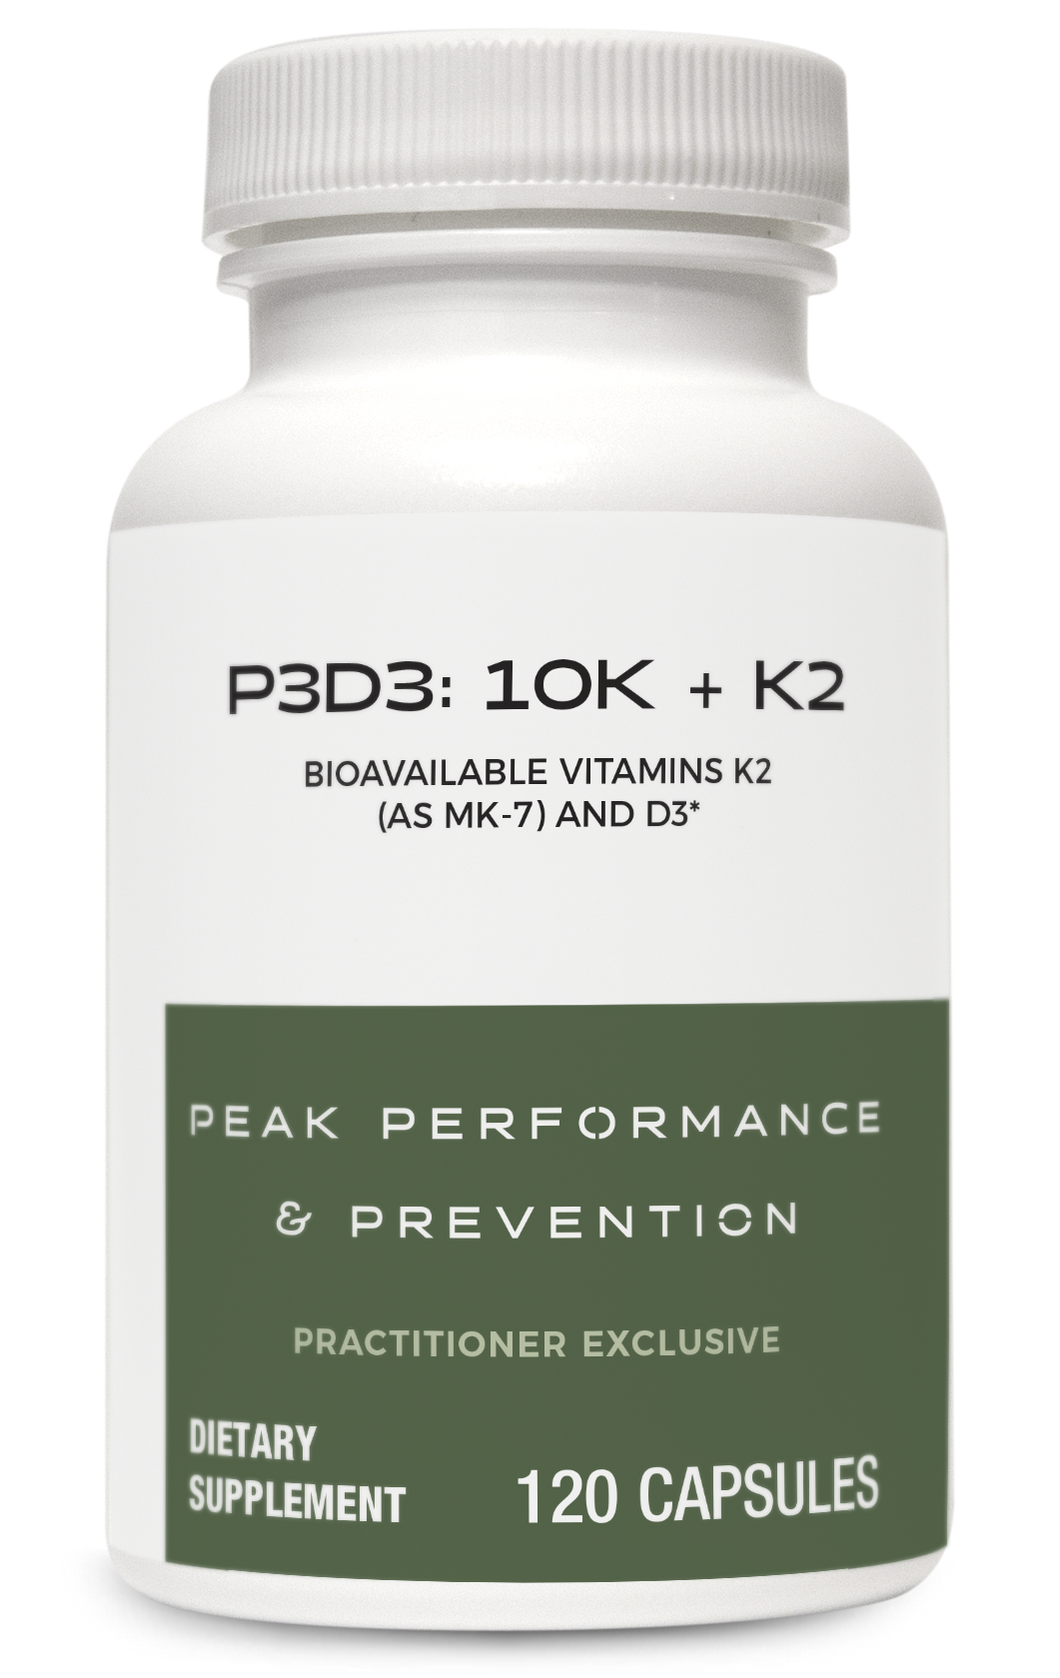 P3D3: 10K + K2